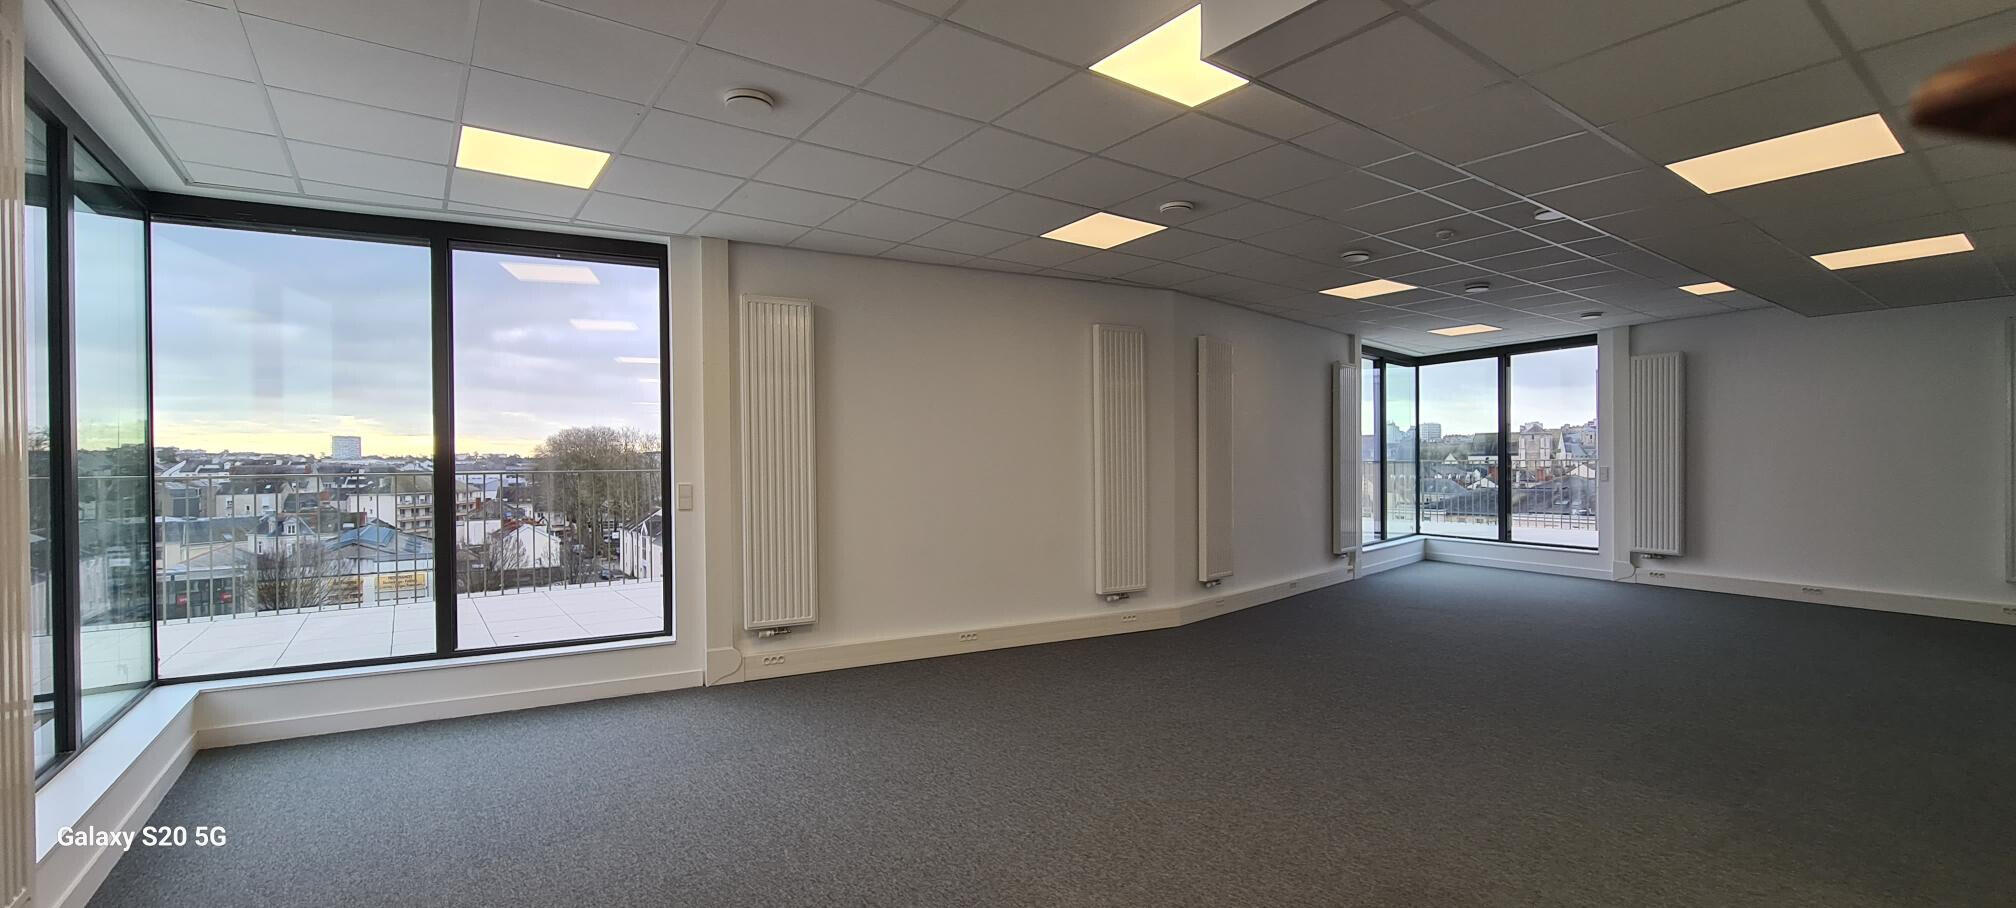 A louer 420m² de bureaux en centre ville d'Angers